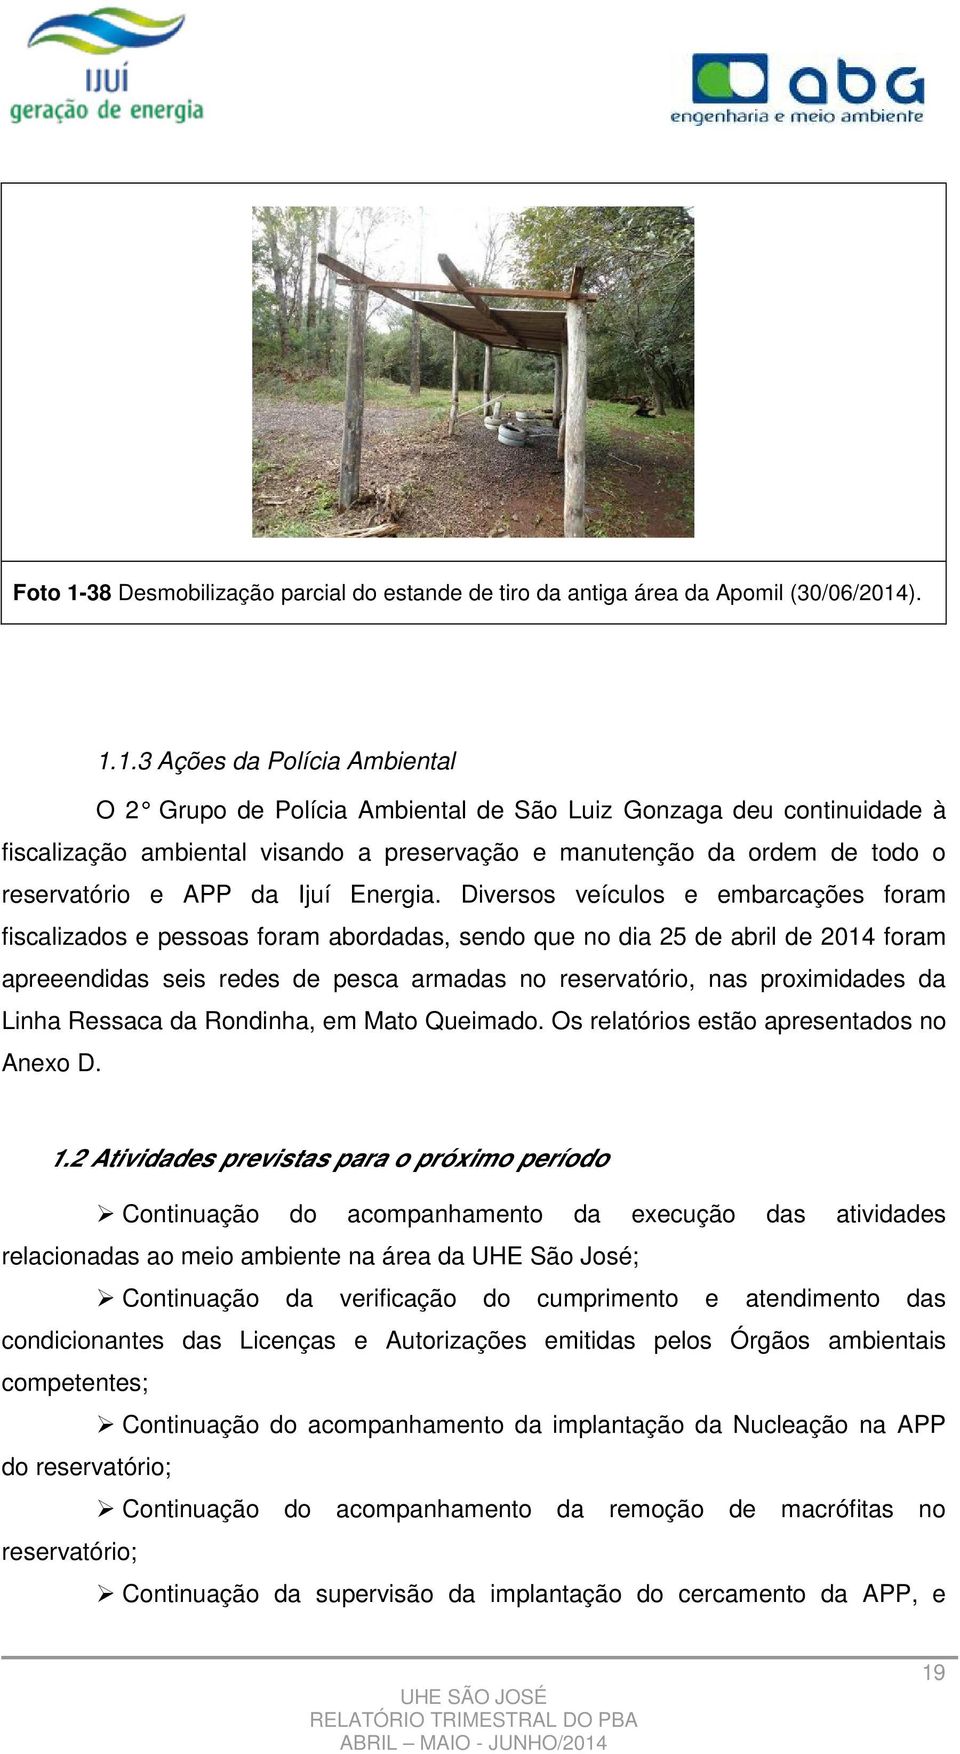 ). 1.1.3 Ações da Polícia Ambiental O 2 Grupo de Polícia Ambiental de São Luiz Gonzaga deu continuidade à fiscalização ambiental visando a preservação e manutenção da ordem de todo o reservatório e